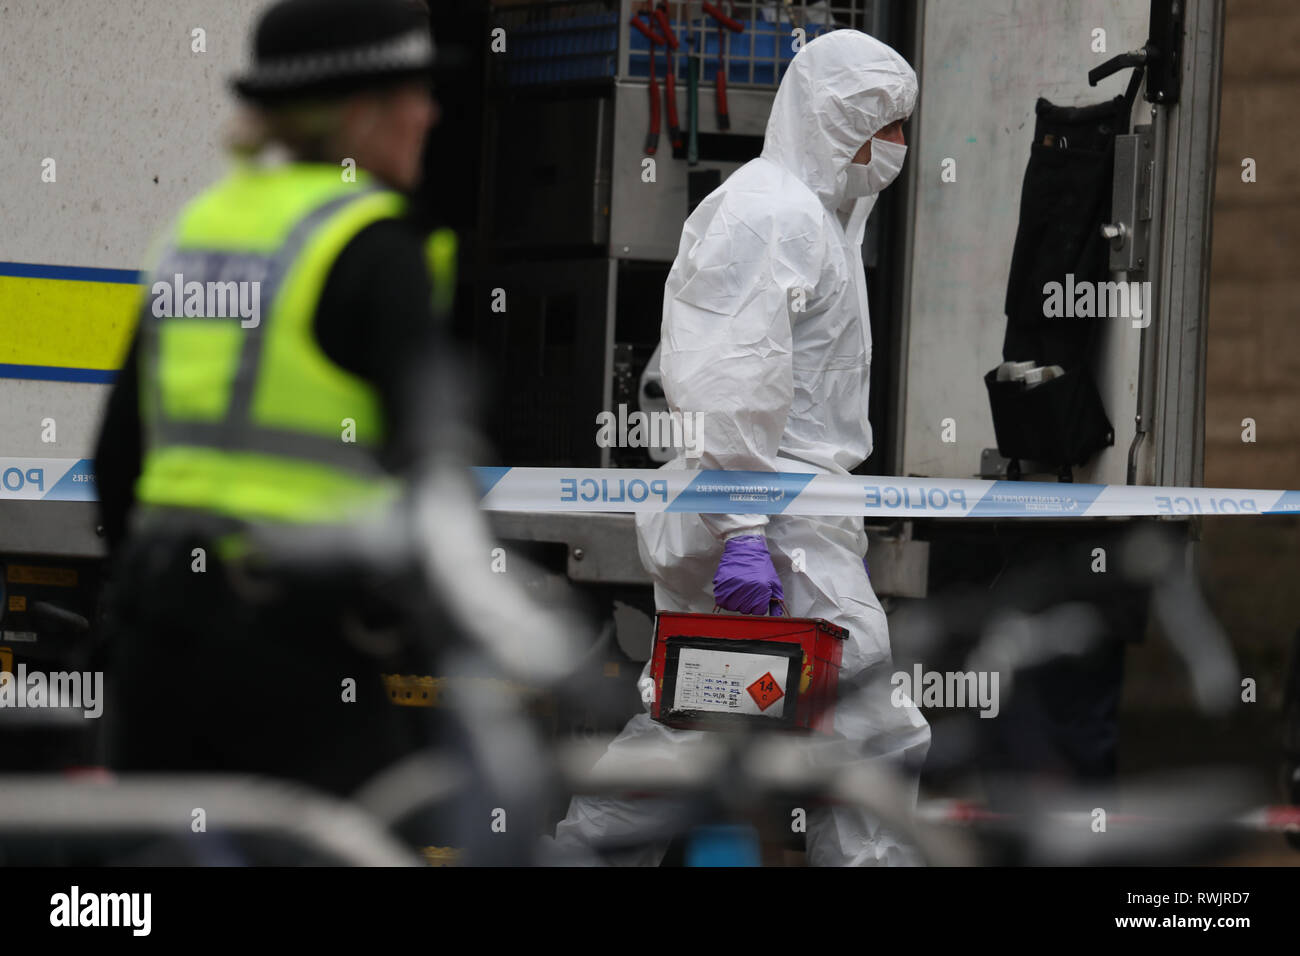 Corps royal de neutralisation des bombes de la logistique du personnel quittent la salle du courrier de l'Université de Glasgow, où un colis suspect a été trouvé conduisant à l'évacuation de l'immeuble. Banque D'Images